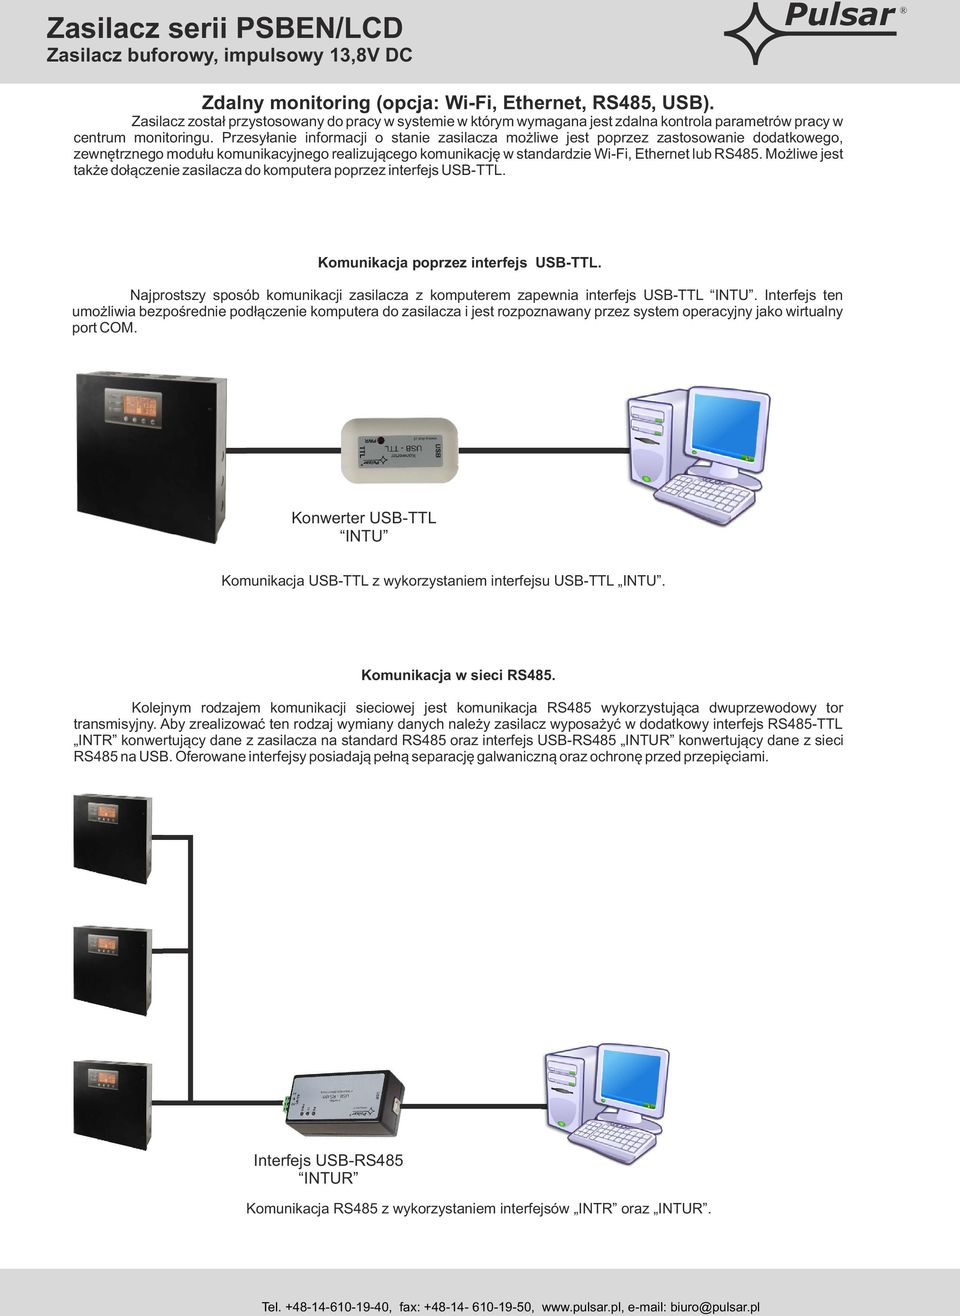 Możliwe jest także dołączenie zasilacza do komputera poprzez interfejs USB-TTL. Komunikacja poprzez interfejs USB-TTL.